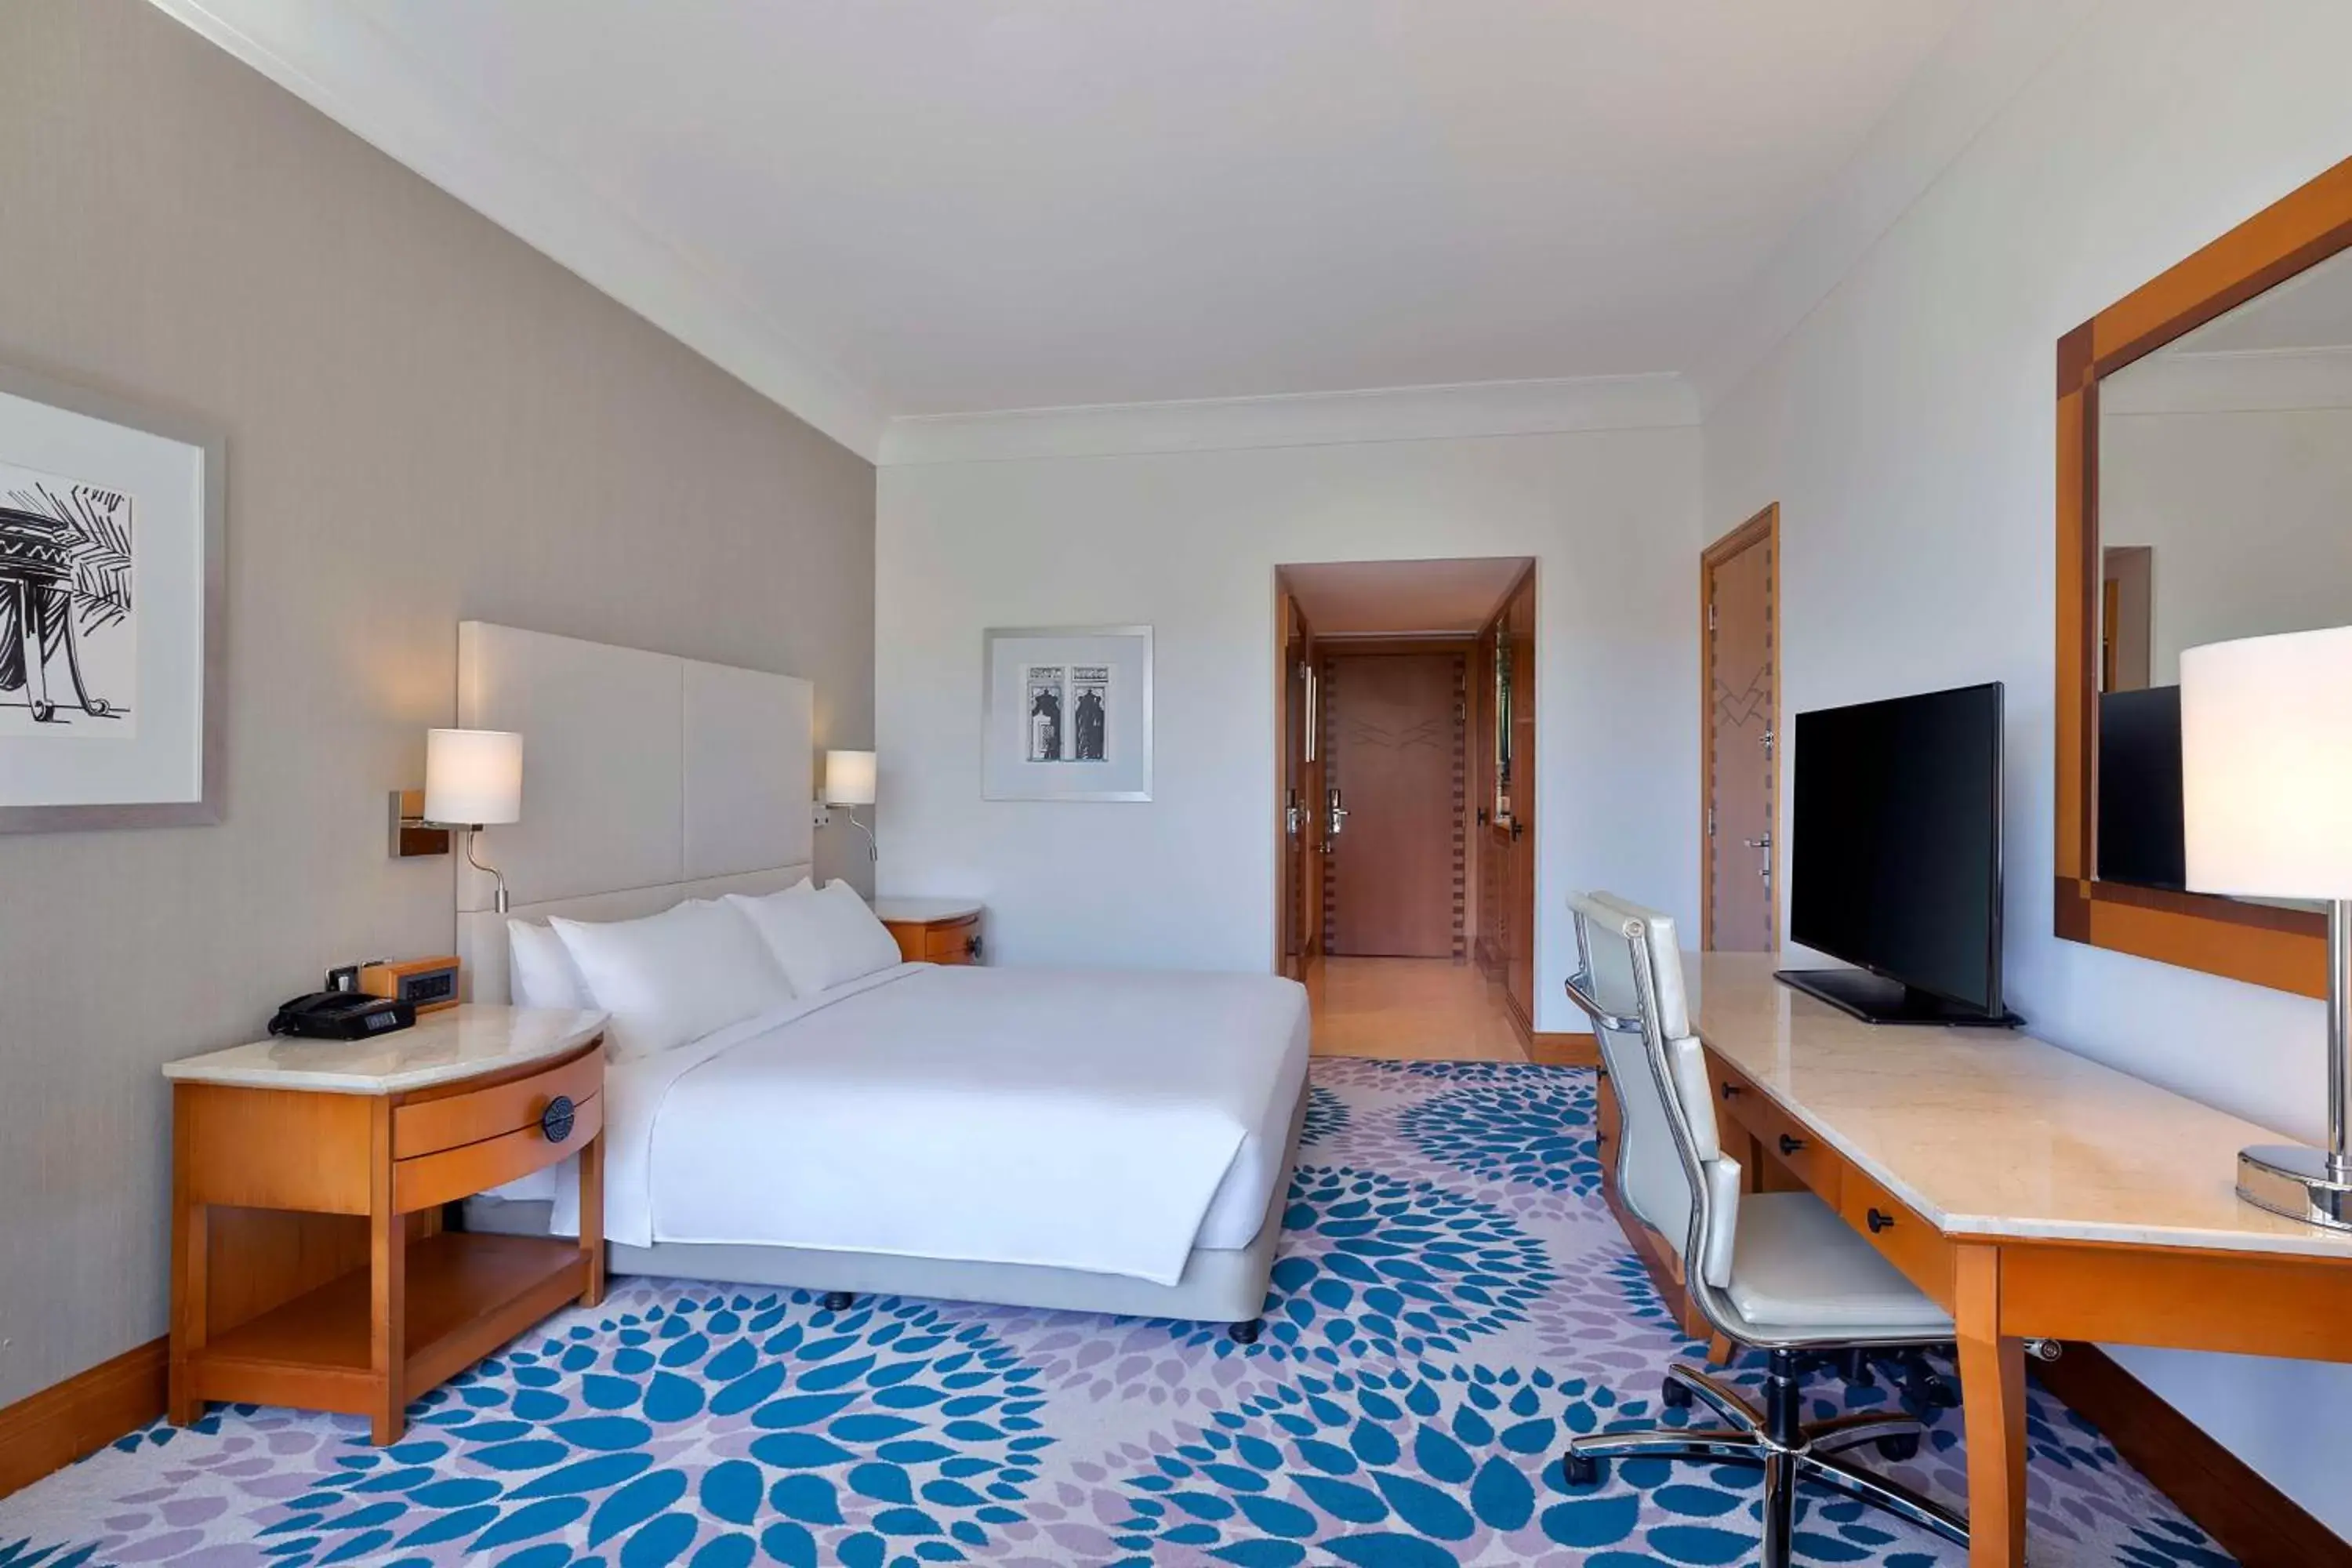 Bedroom, TV/Entertainment Center in Hilton Dubai Jumeirah